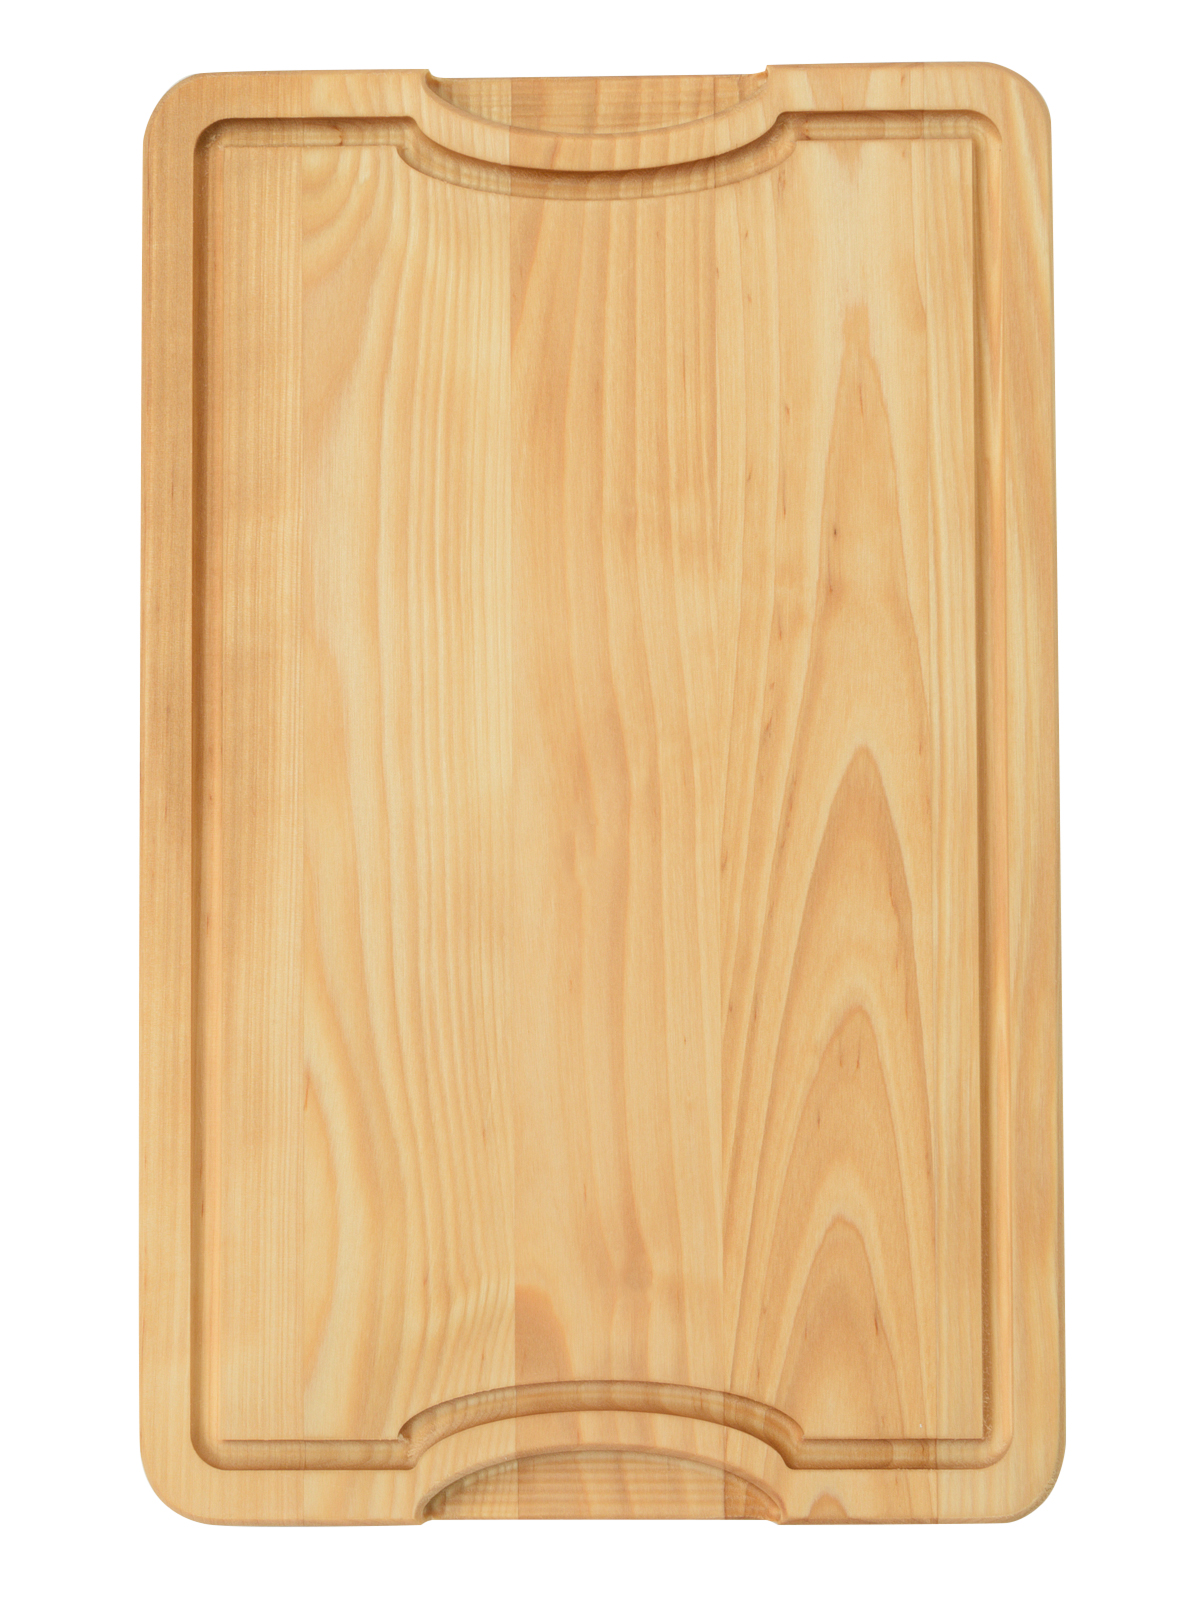 Разделочная доска KETT-UP ECO WOOD & COOK 23*38 см деревянная фигурная